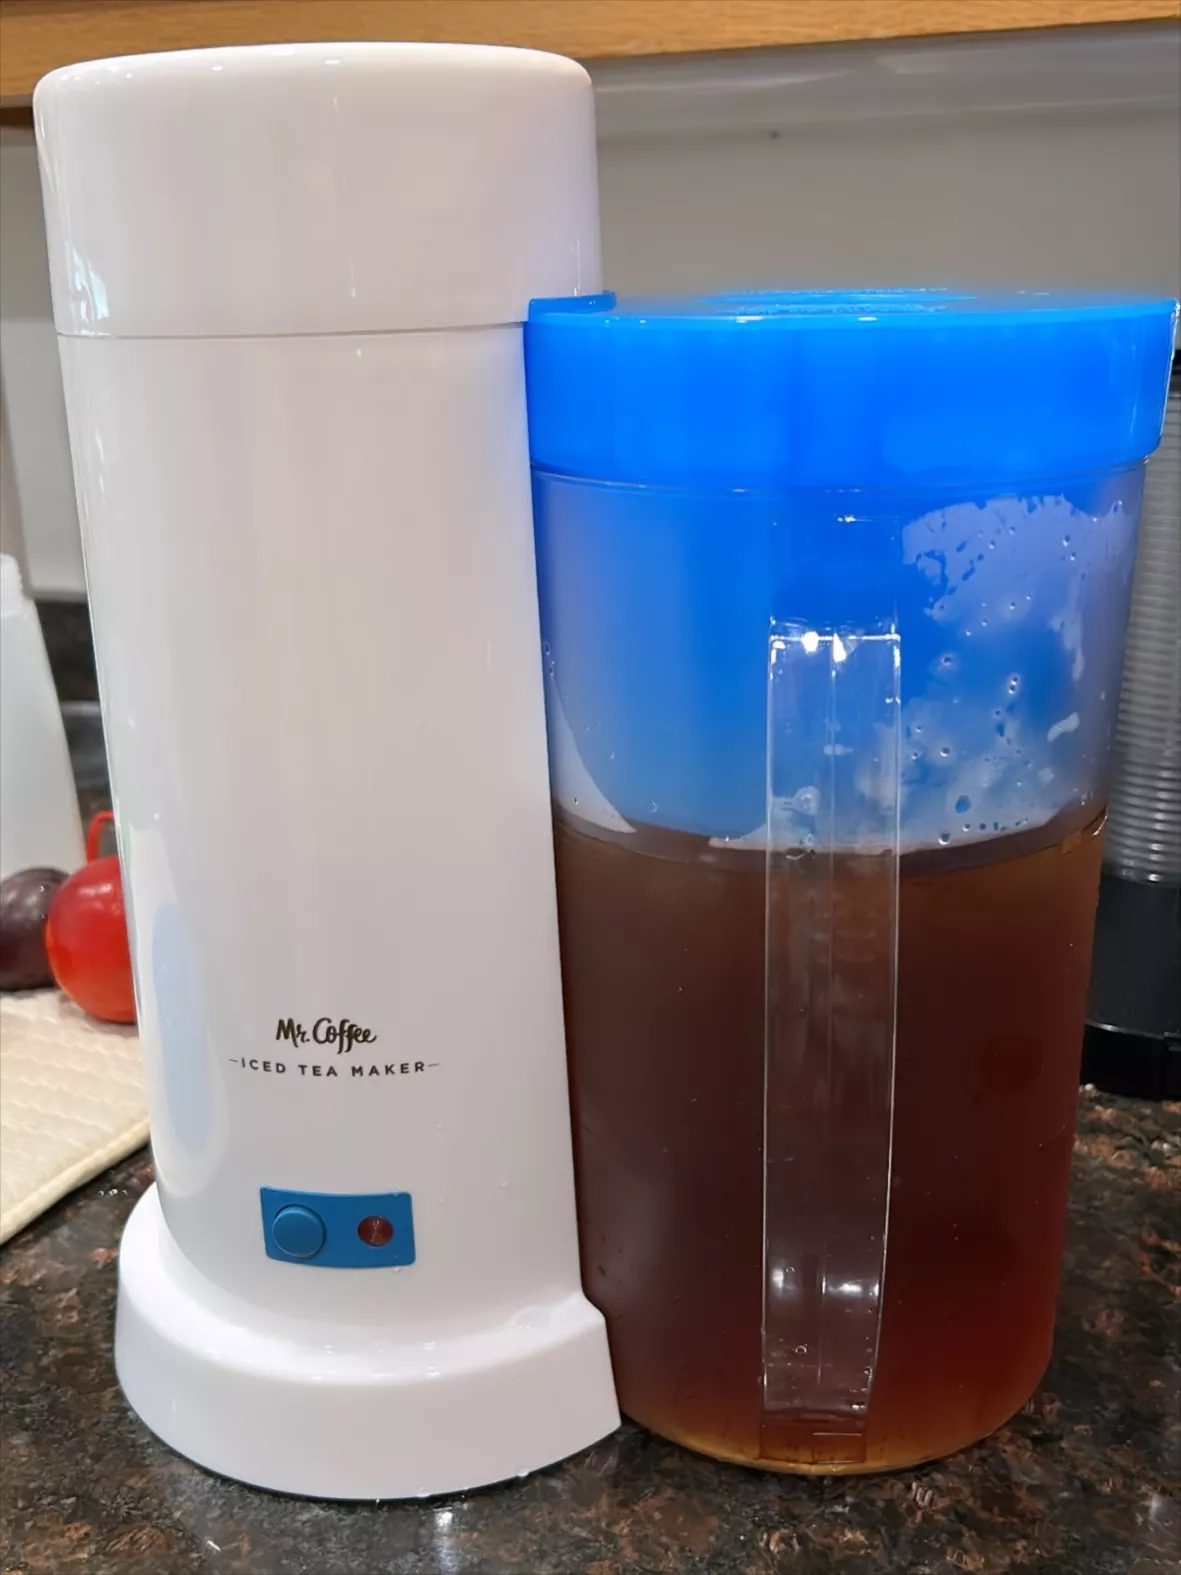 Mr. Coffee TM75 Iced Tea Maker, 1 EA, Blue, TM1RB